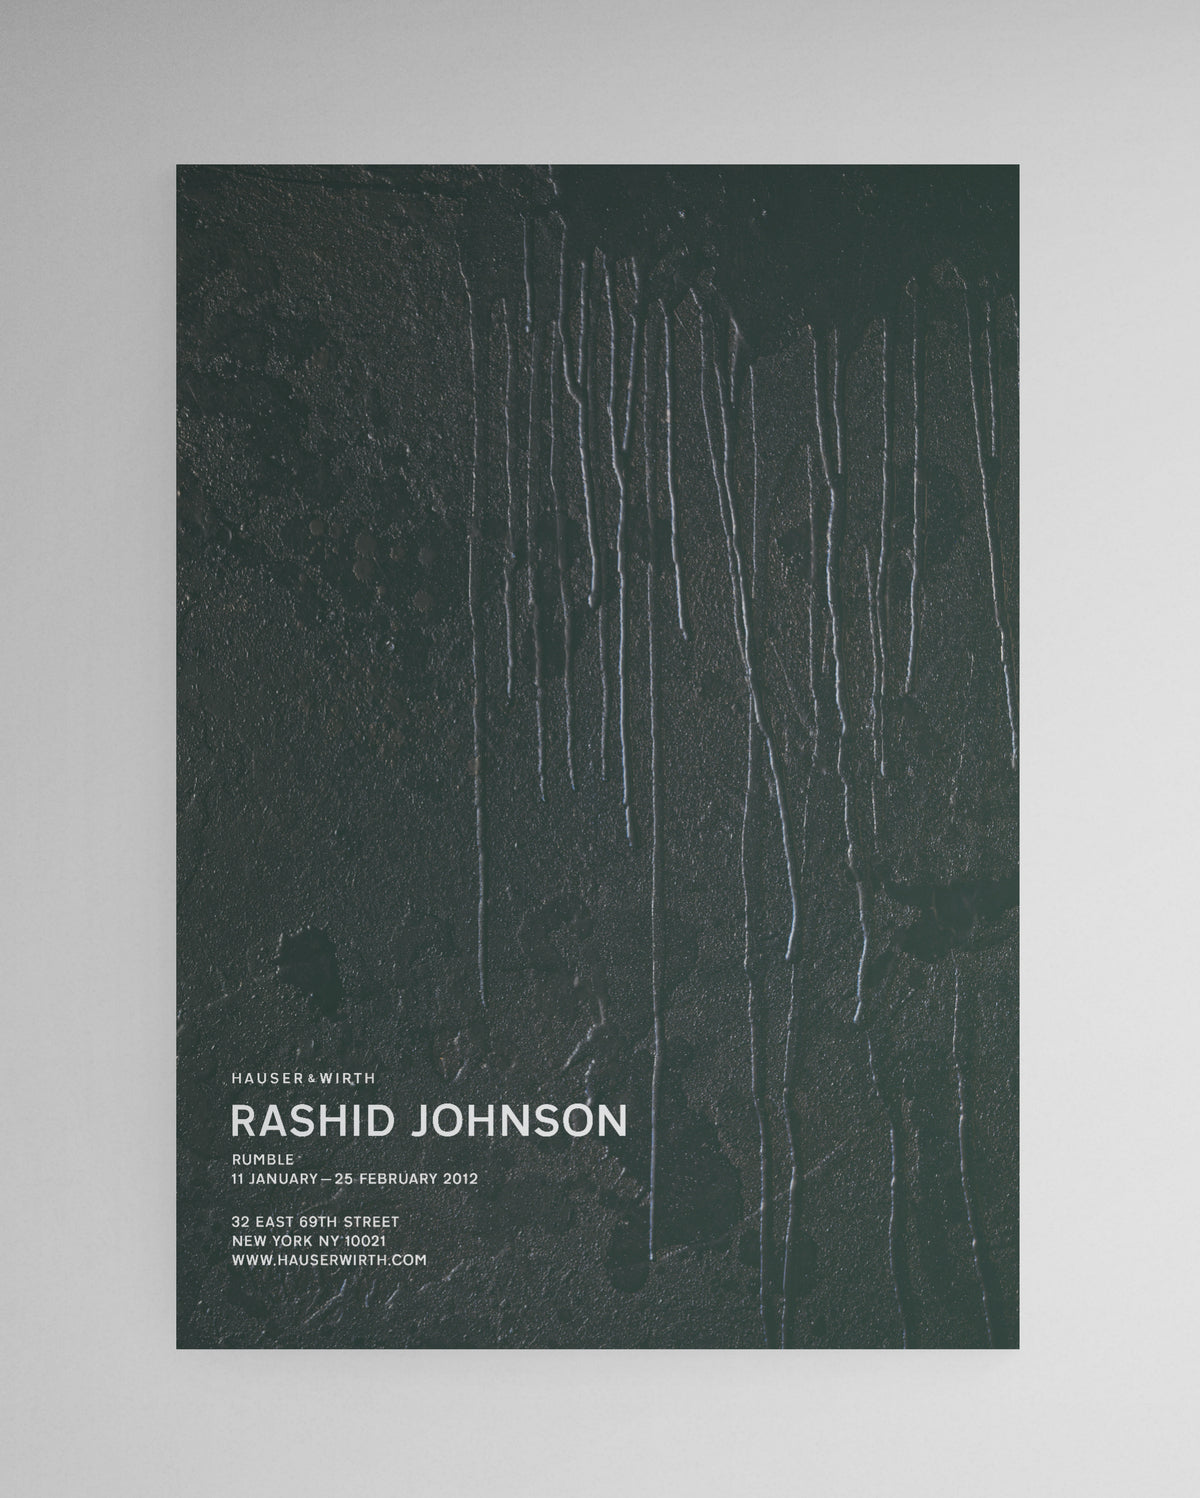 Rashid Johnson, 2012